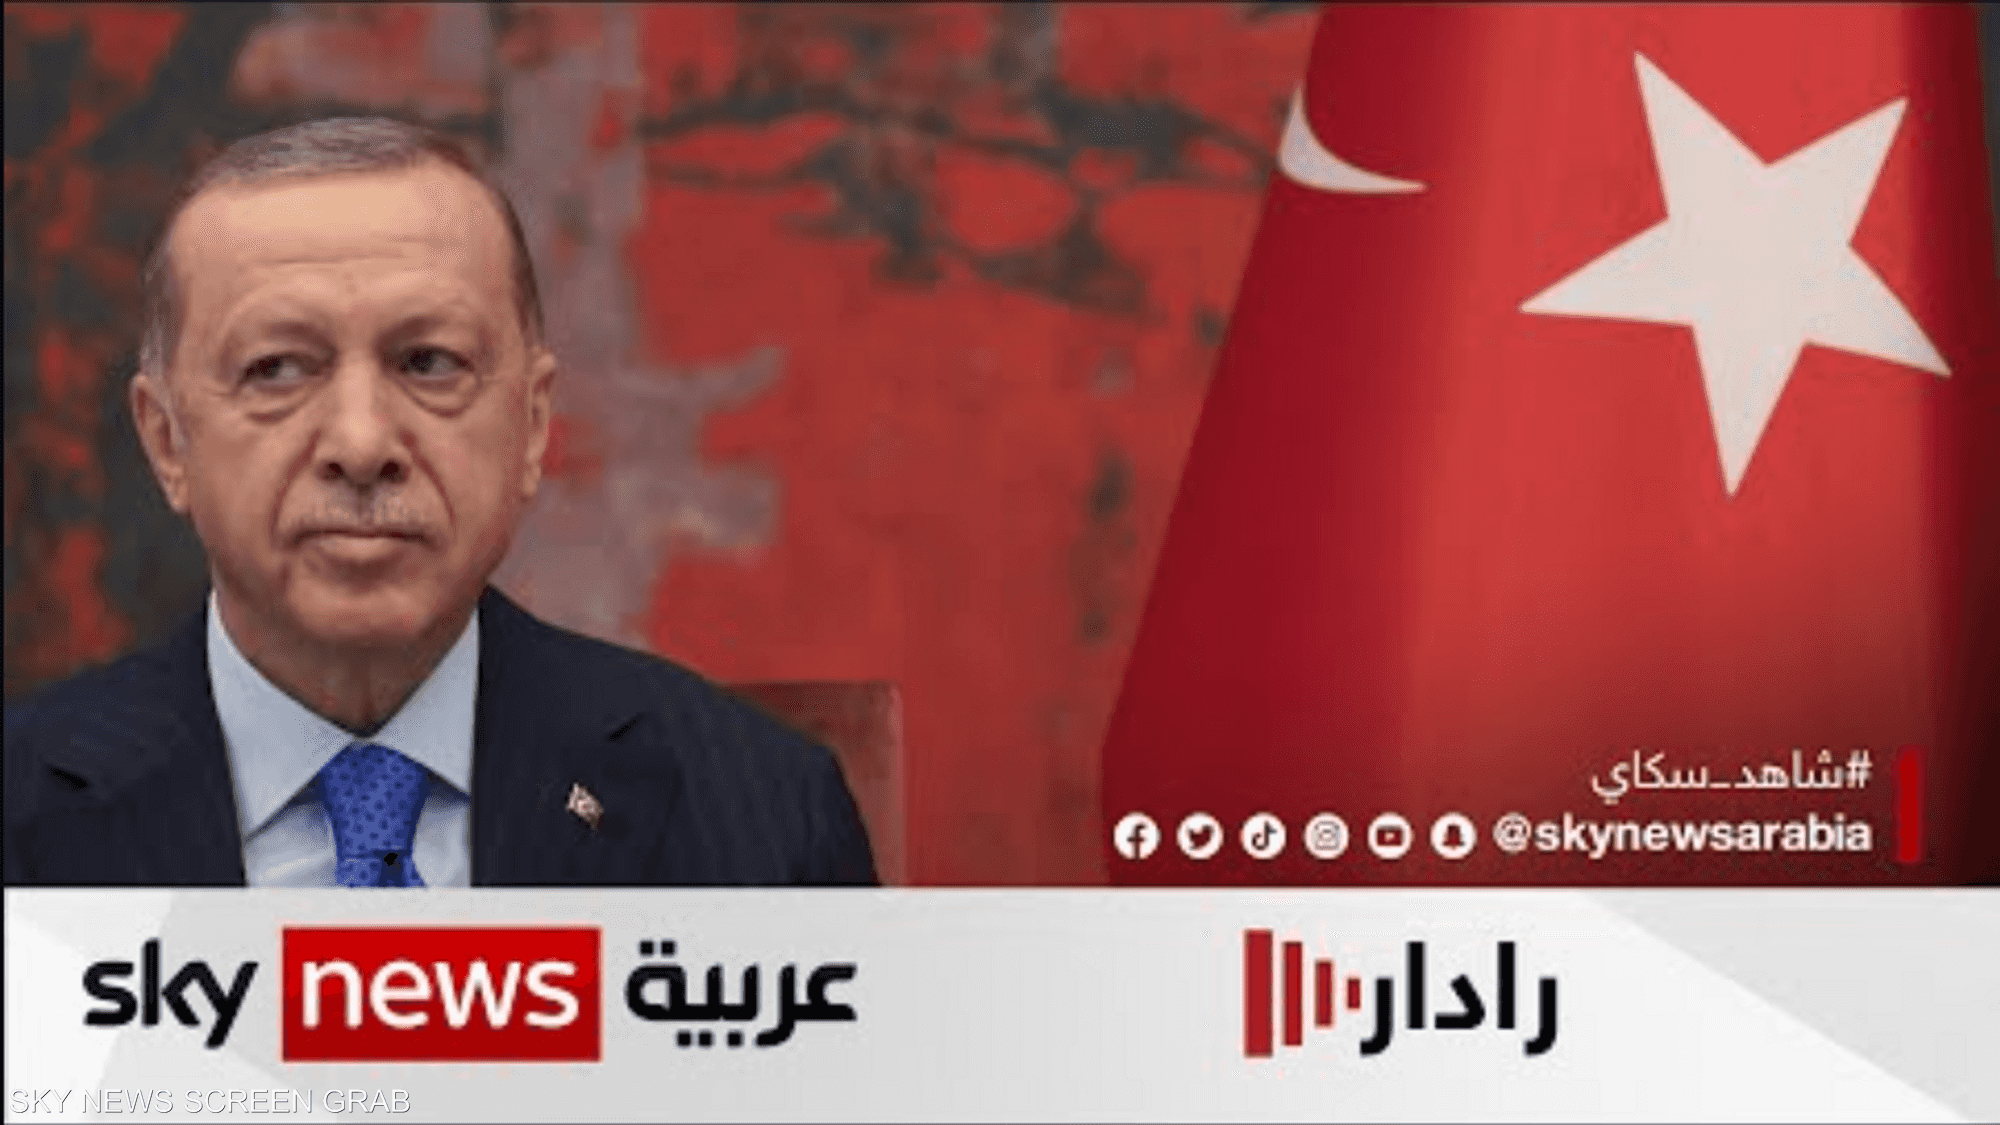 أوردوغان يكشف عن أن لقاءه مع السيسي في الدوحة دام 45 دقيقة